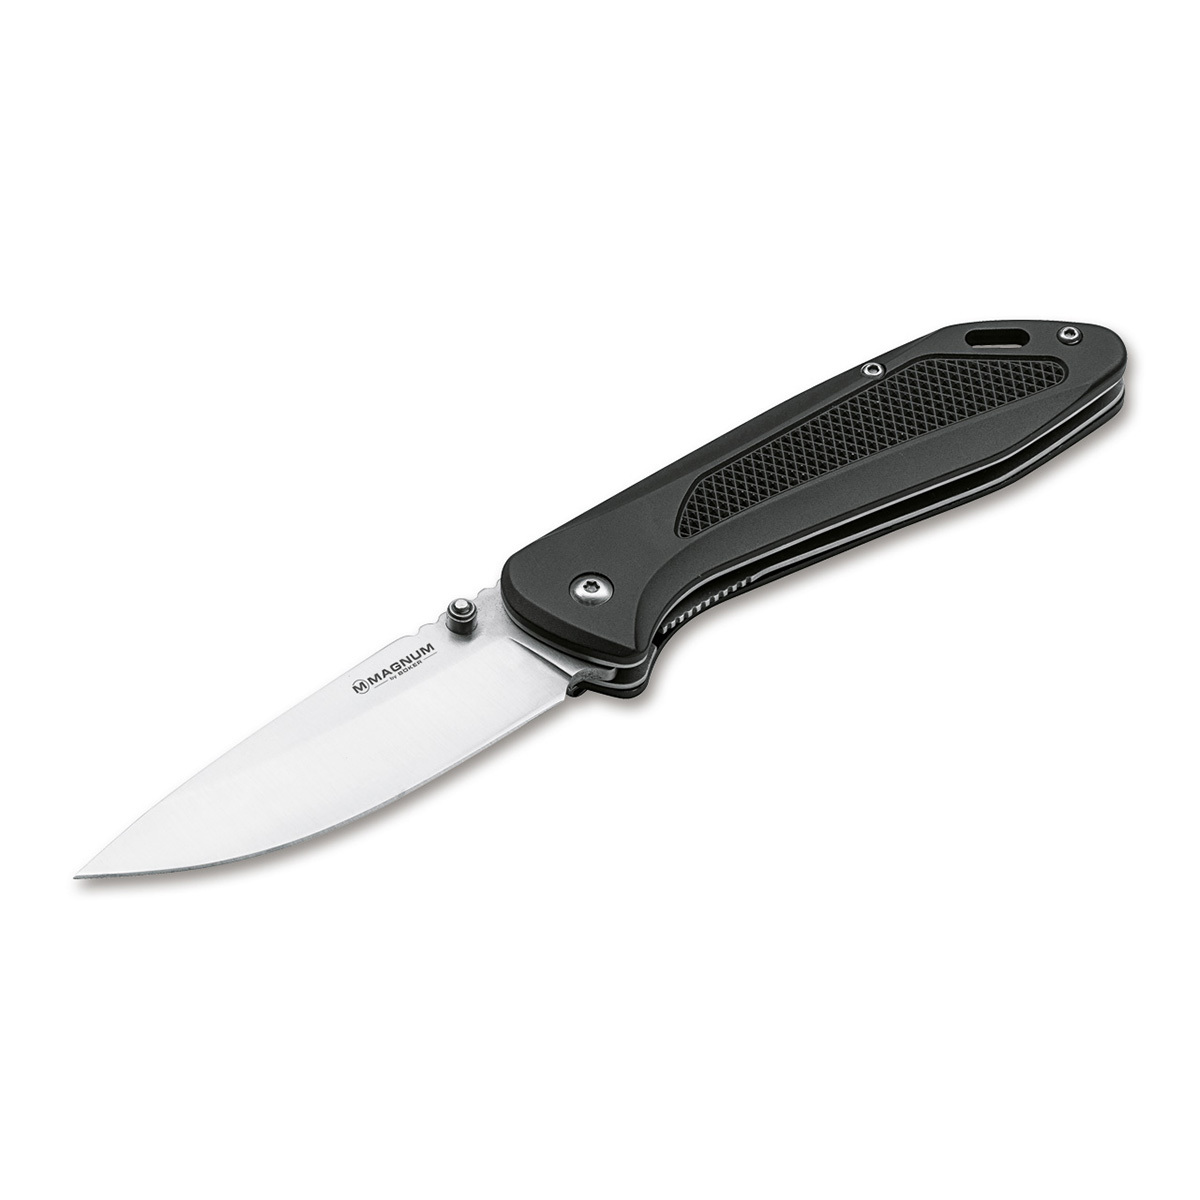 Нож складной Boker Advance black, сталь 440C, рукоять алюминий многофункциональный складной нож extrema ratio bf m1a2 ruvido handle сталь bhler n690 рукоять алюминий